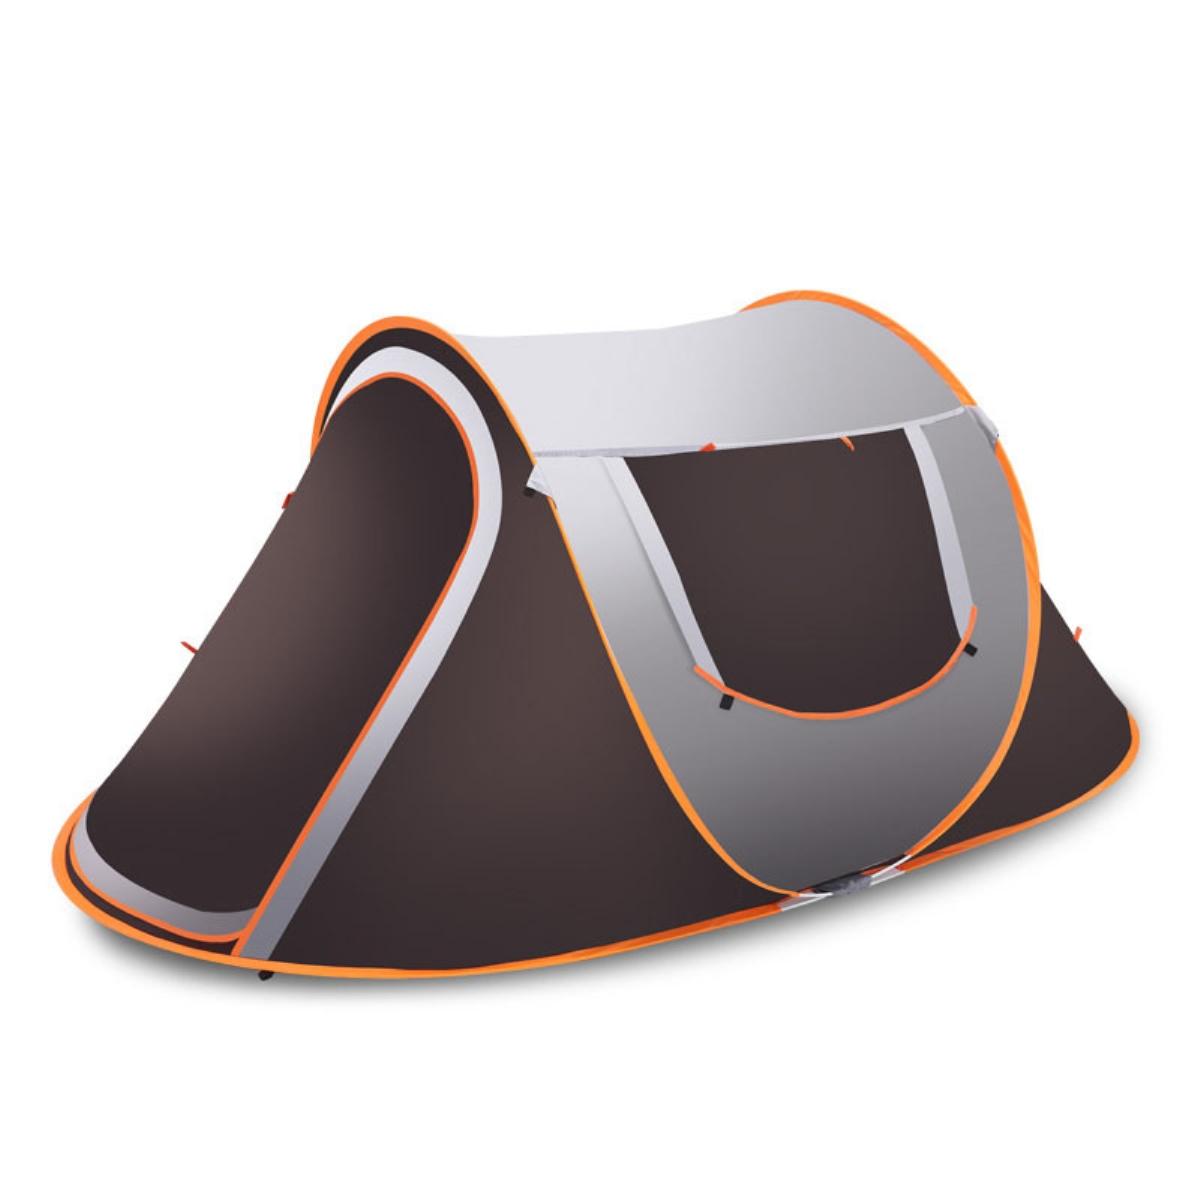 Zelt für 3-4 Personen, wasserdicht, mit Sonnenschutz und Regenschutz, ideal zum Camping und Wandern.